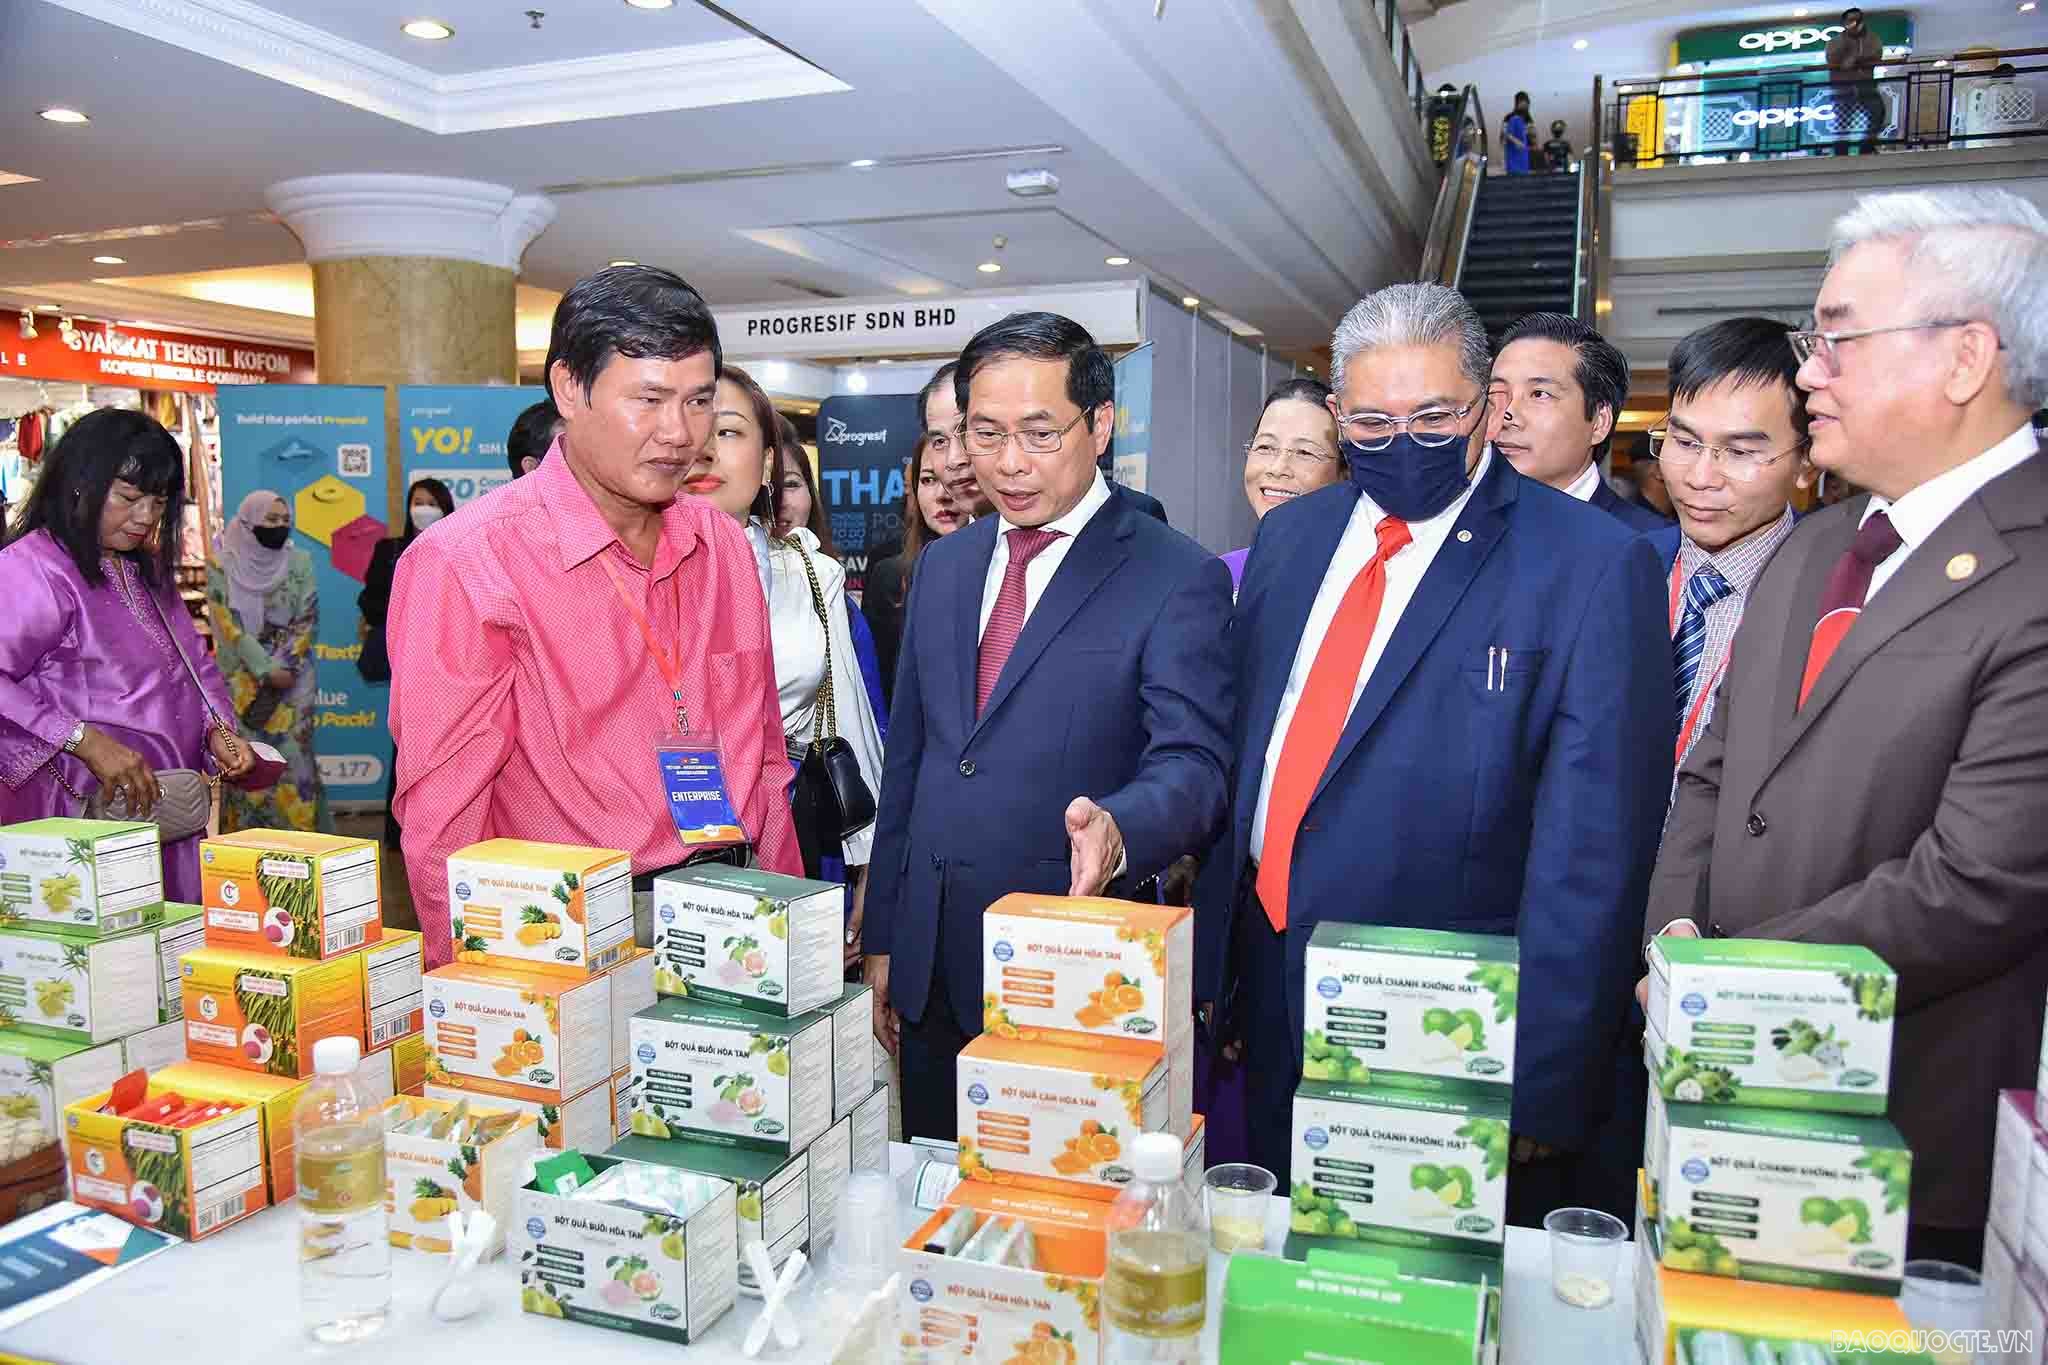 Triển lãm thu hút hơn 30 doanh nghiệp của Việt Nam và Brunei trưng bày sản phẩm đặc trưng của mỗi nước để doanh nghiệp, khách thăm quan có cơ hội tìm hiểu, khám phá các sản phẩm có tiềm năng đối với mỗi nước.